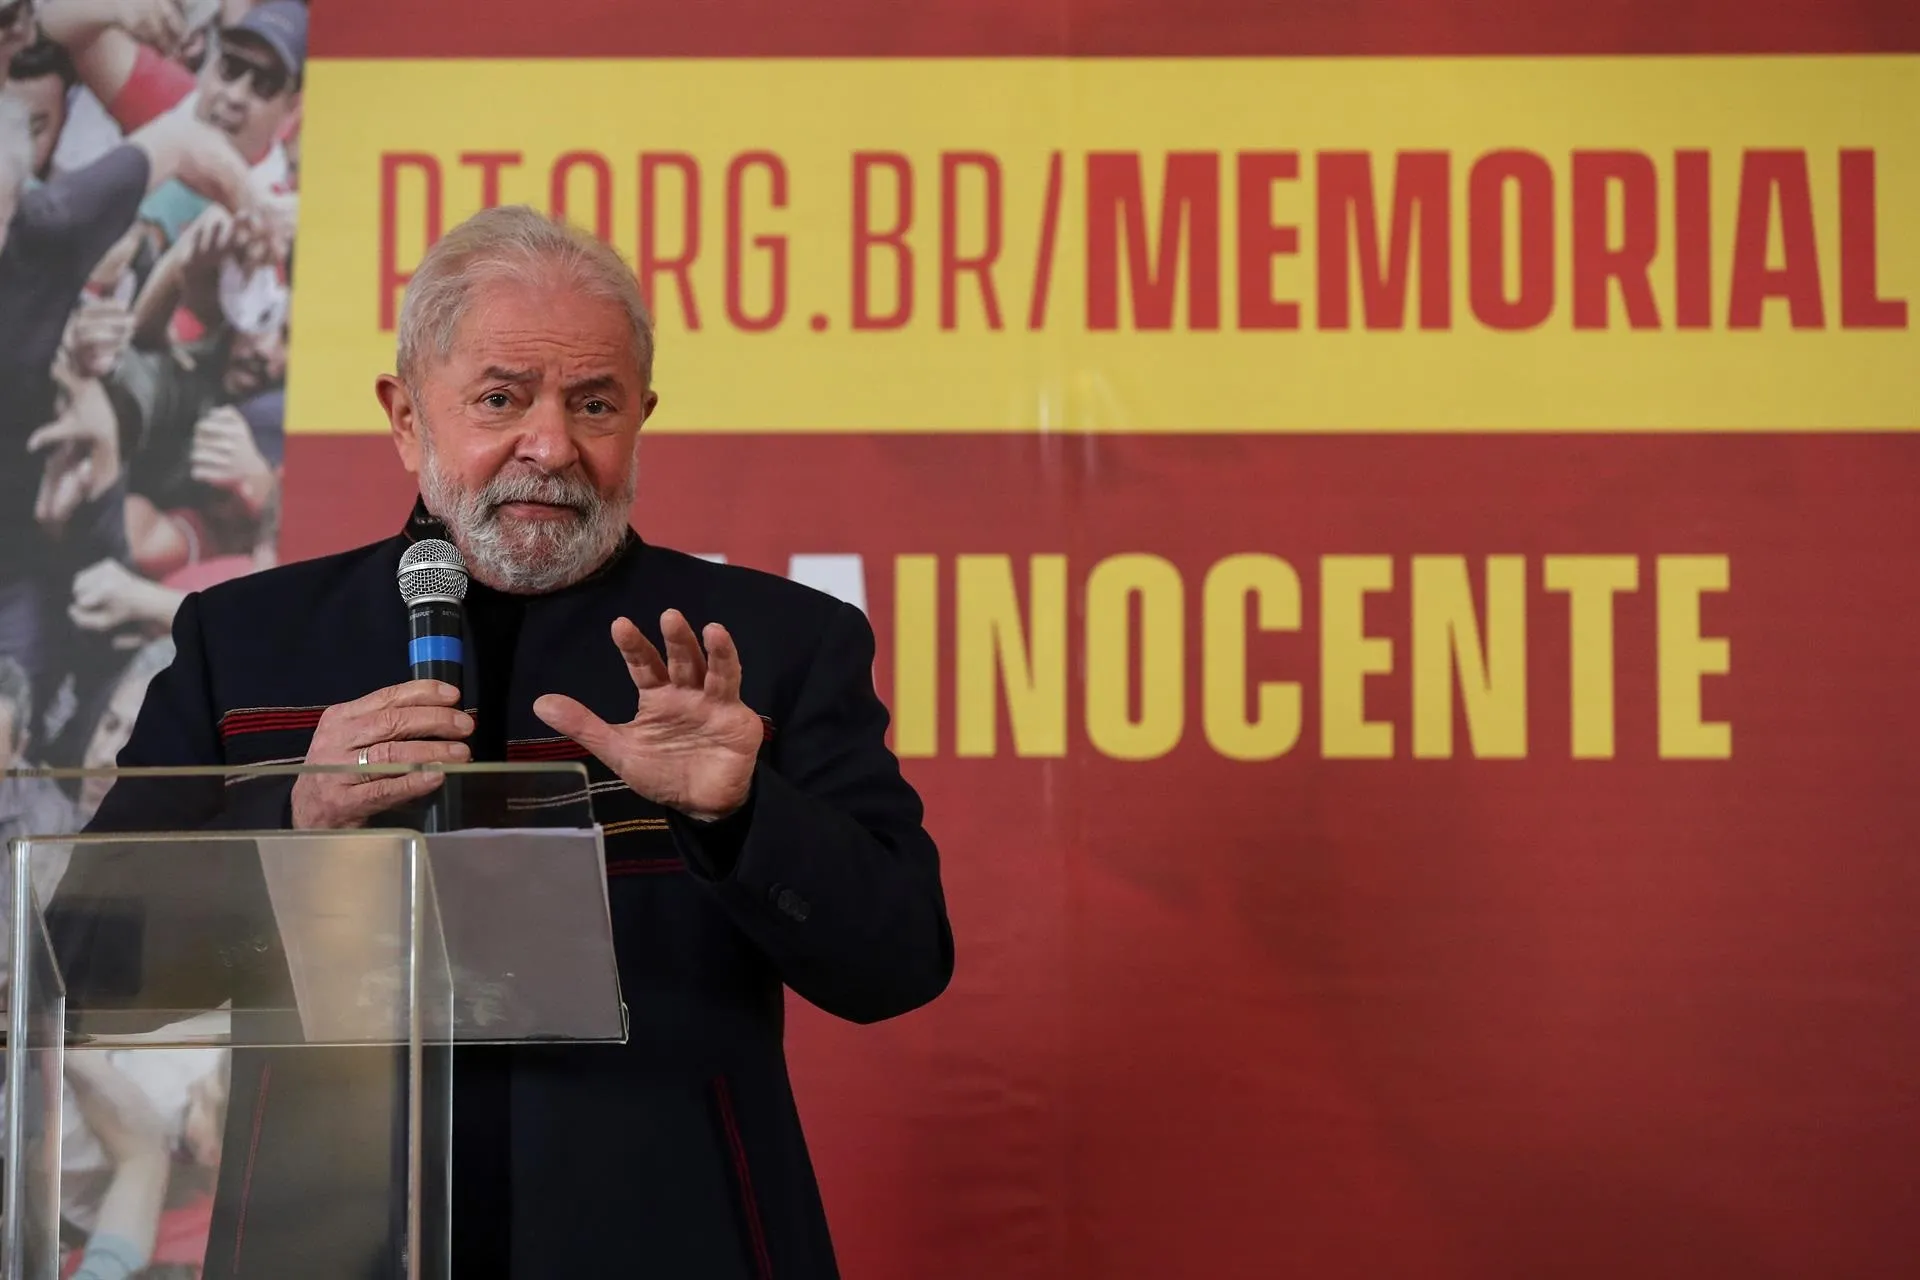 Lula con sólida ventaja para darle una pela a Bolsonaro